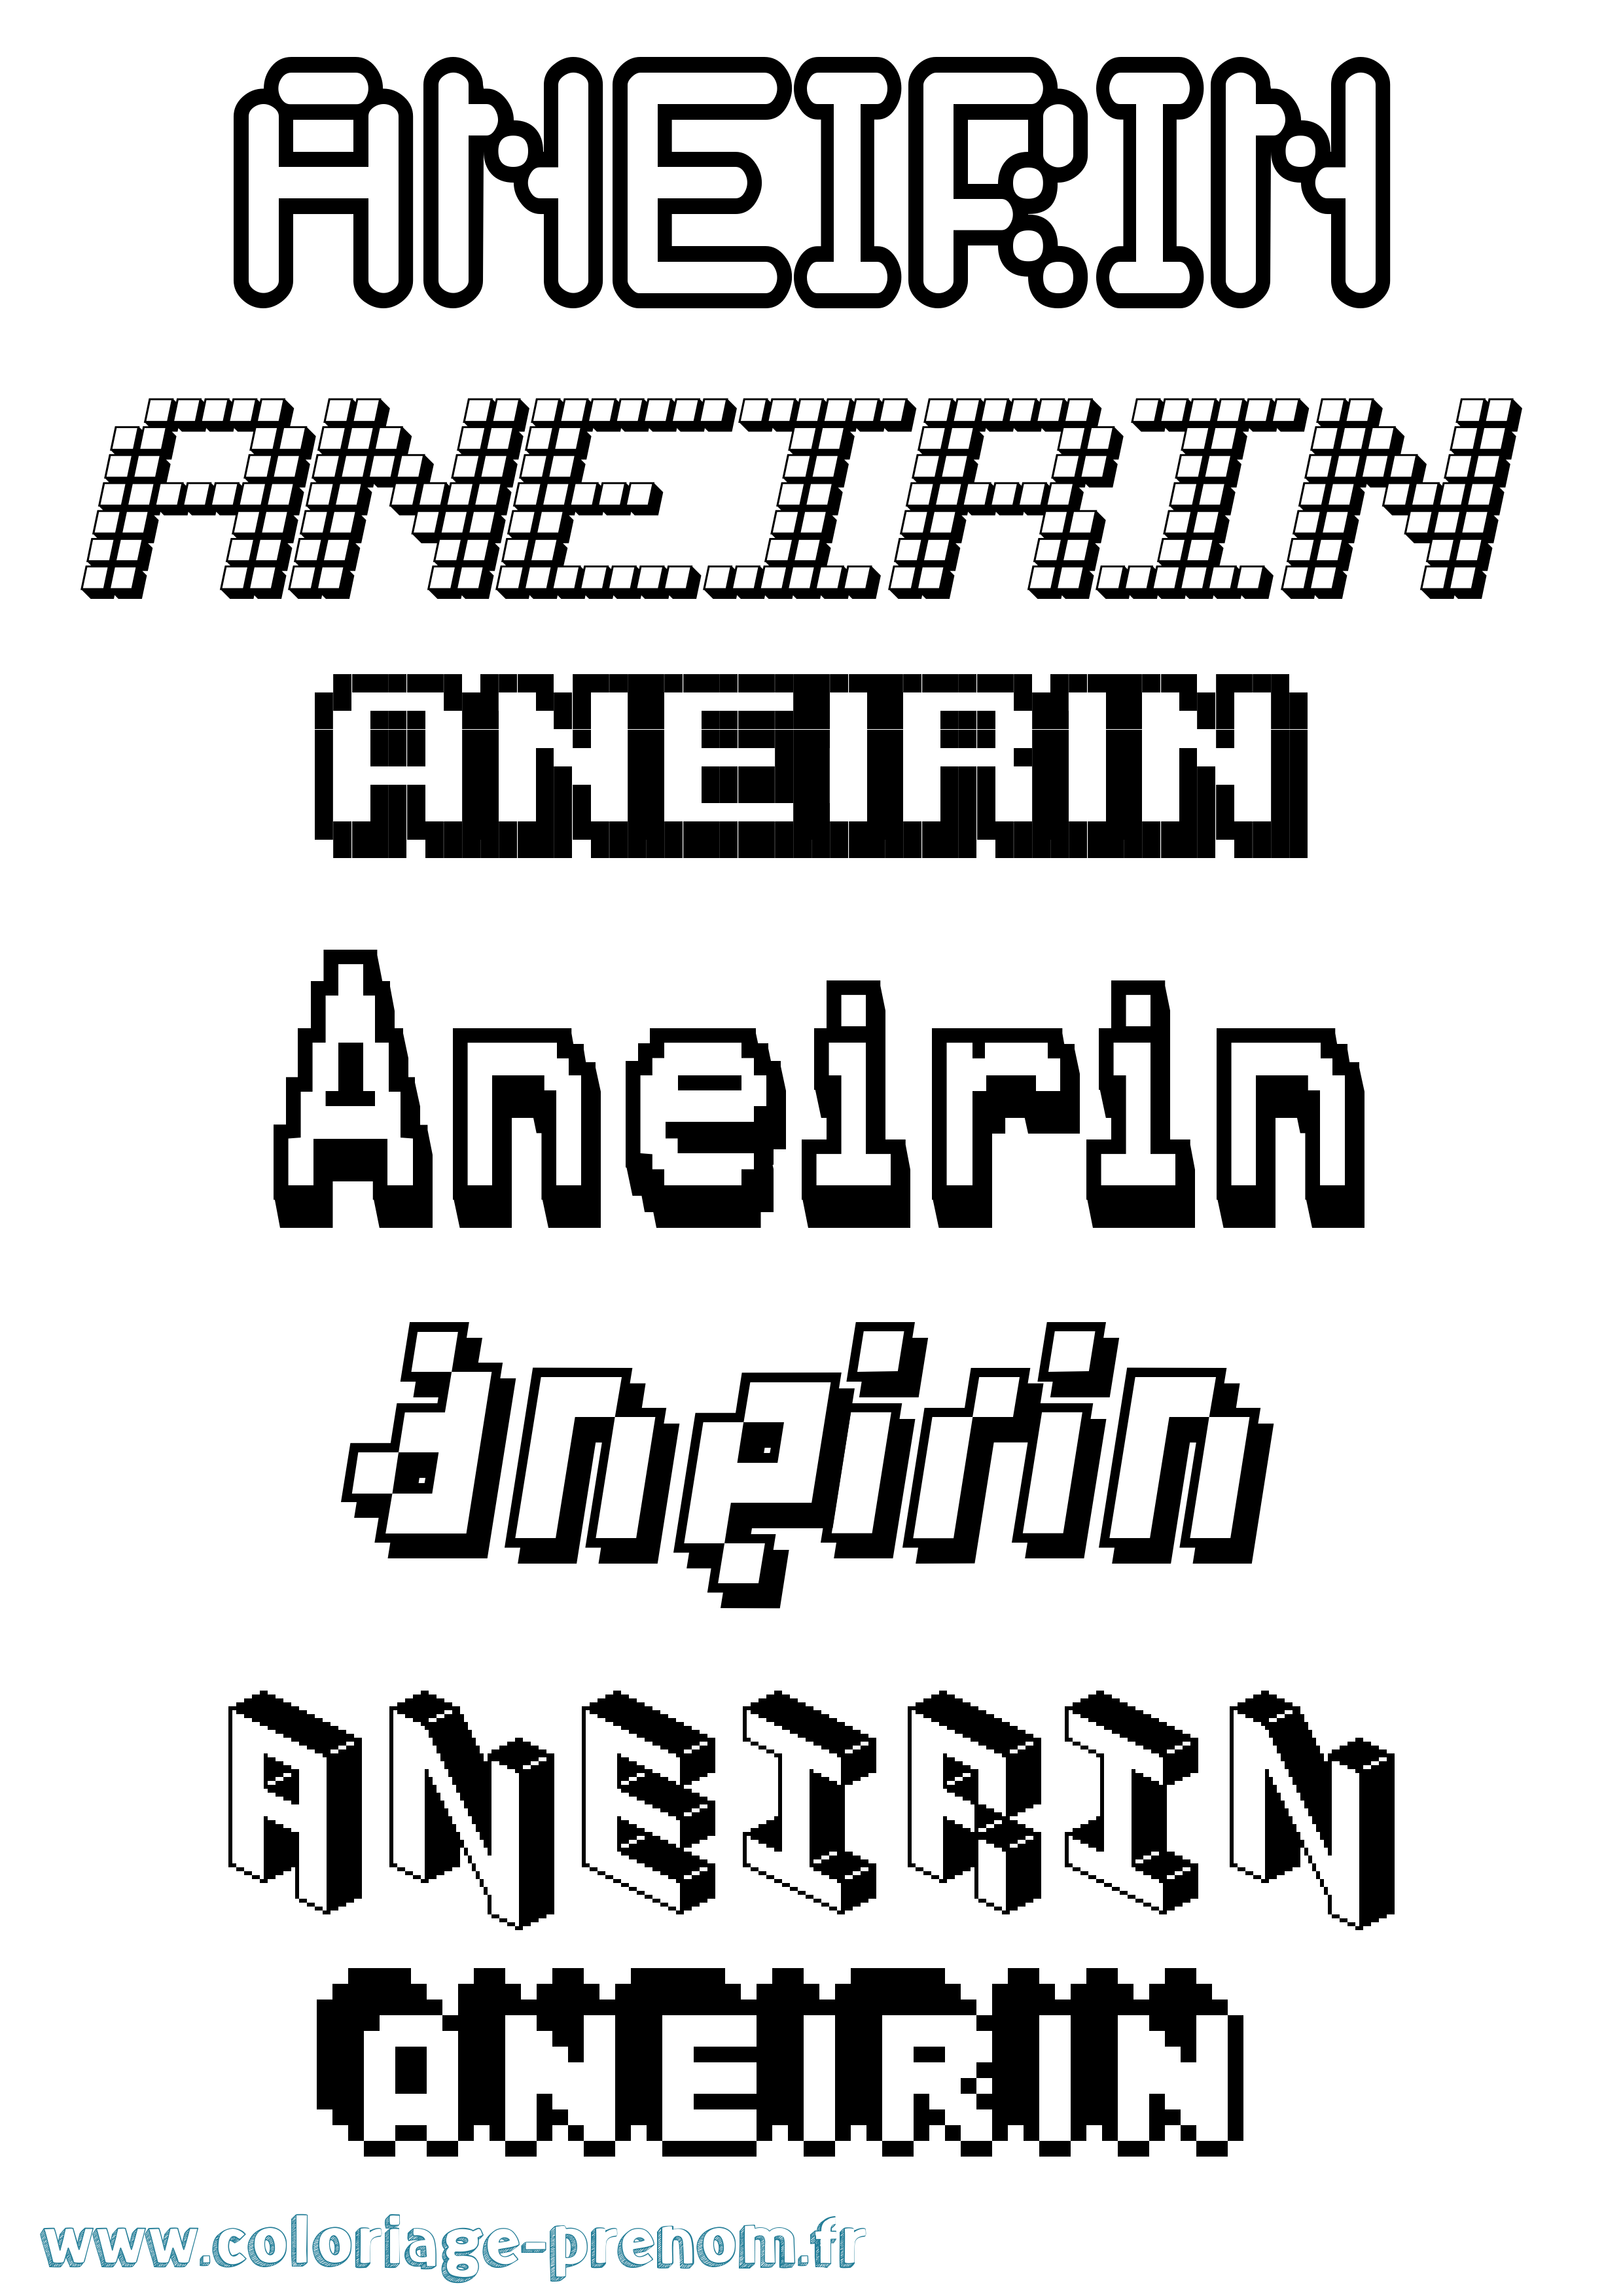 Coloriage prénom Aneirin Pixel